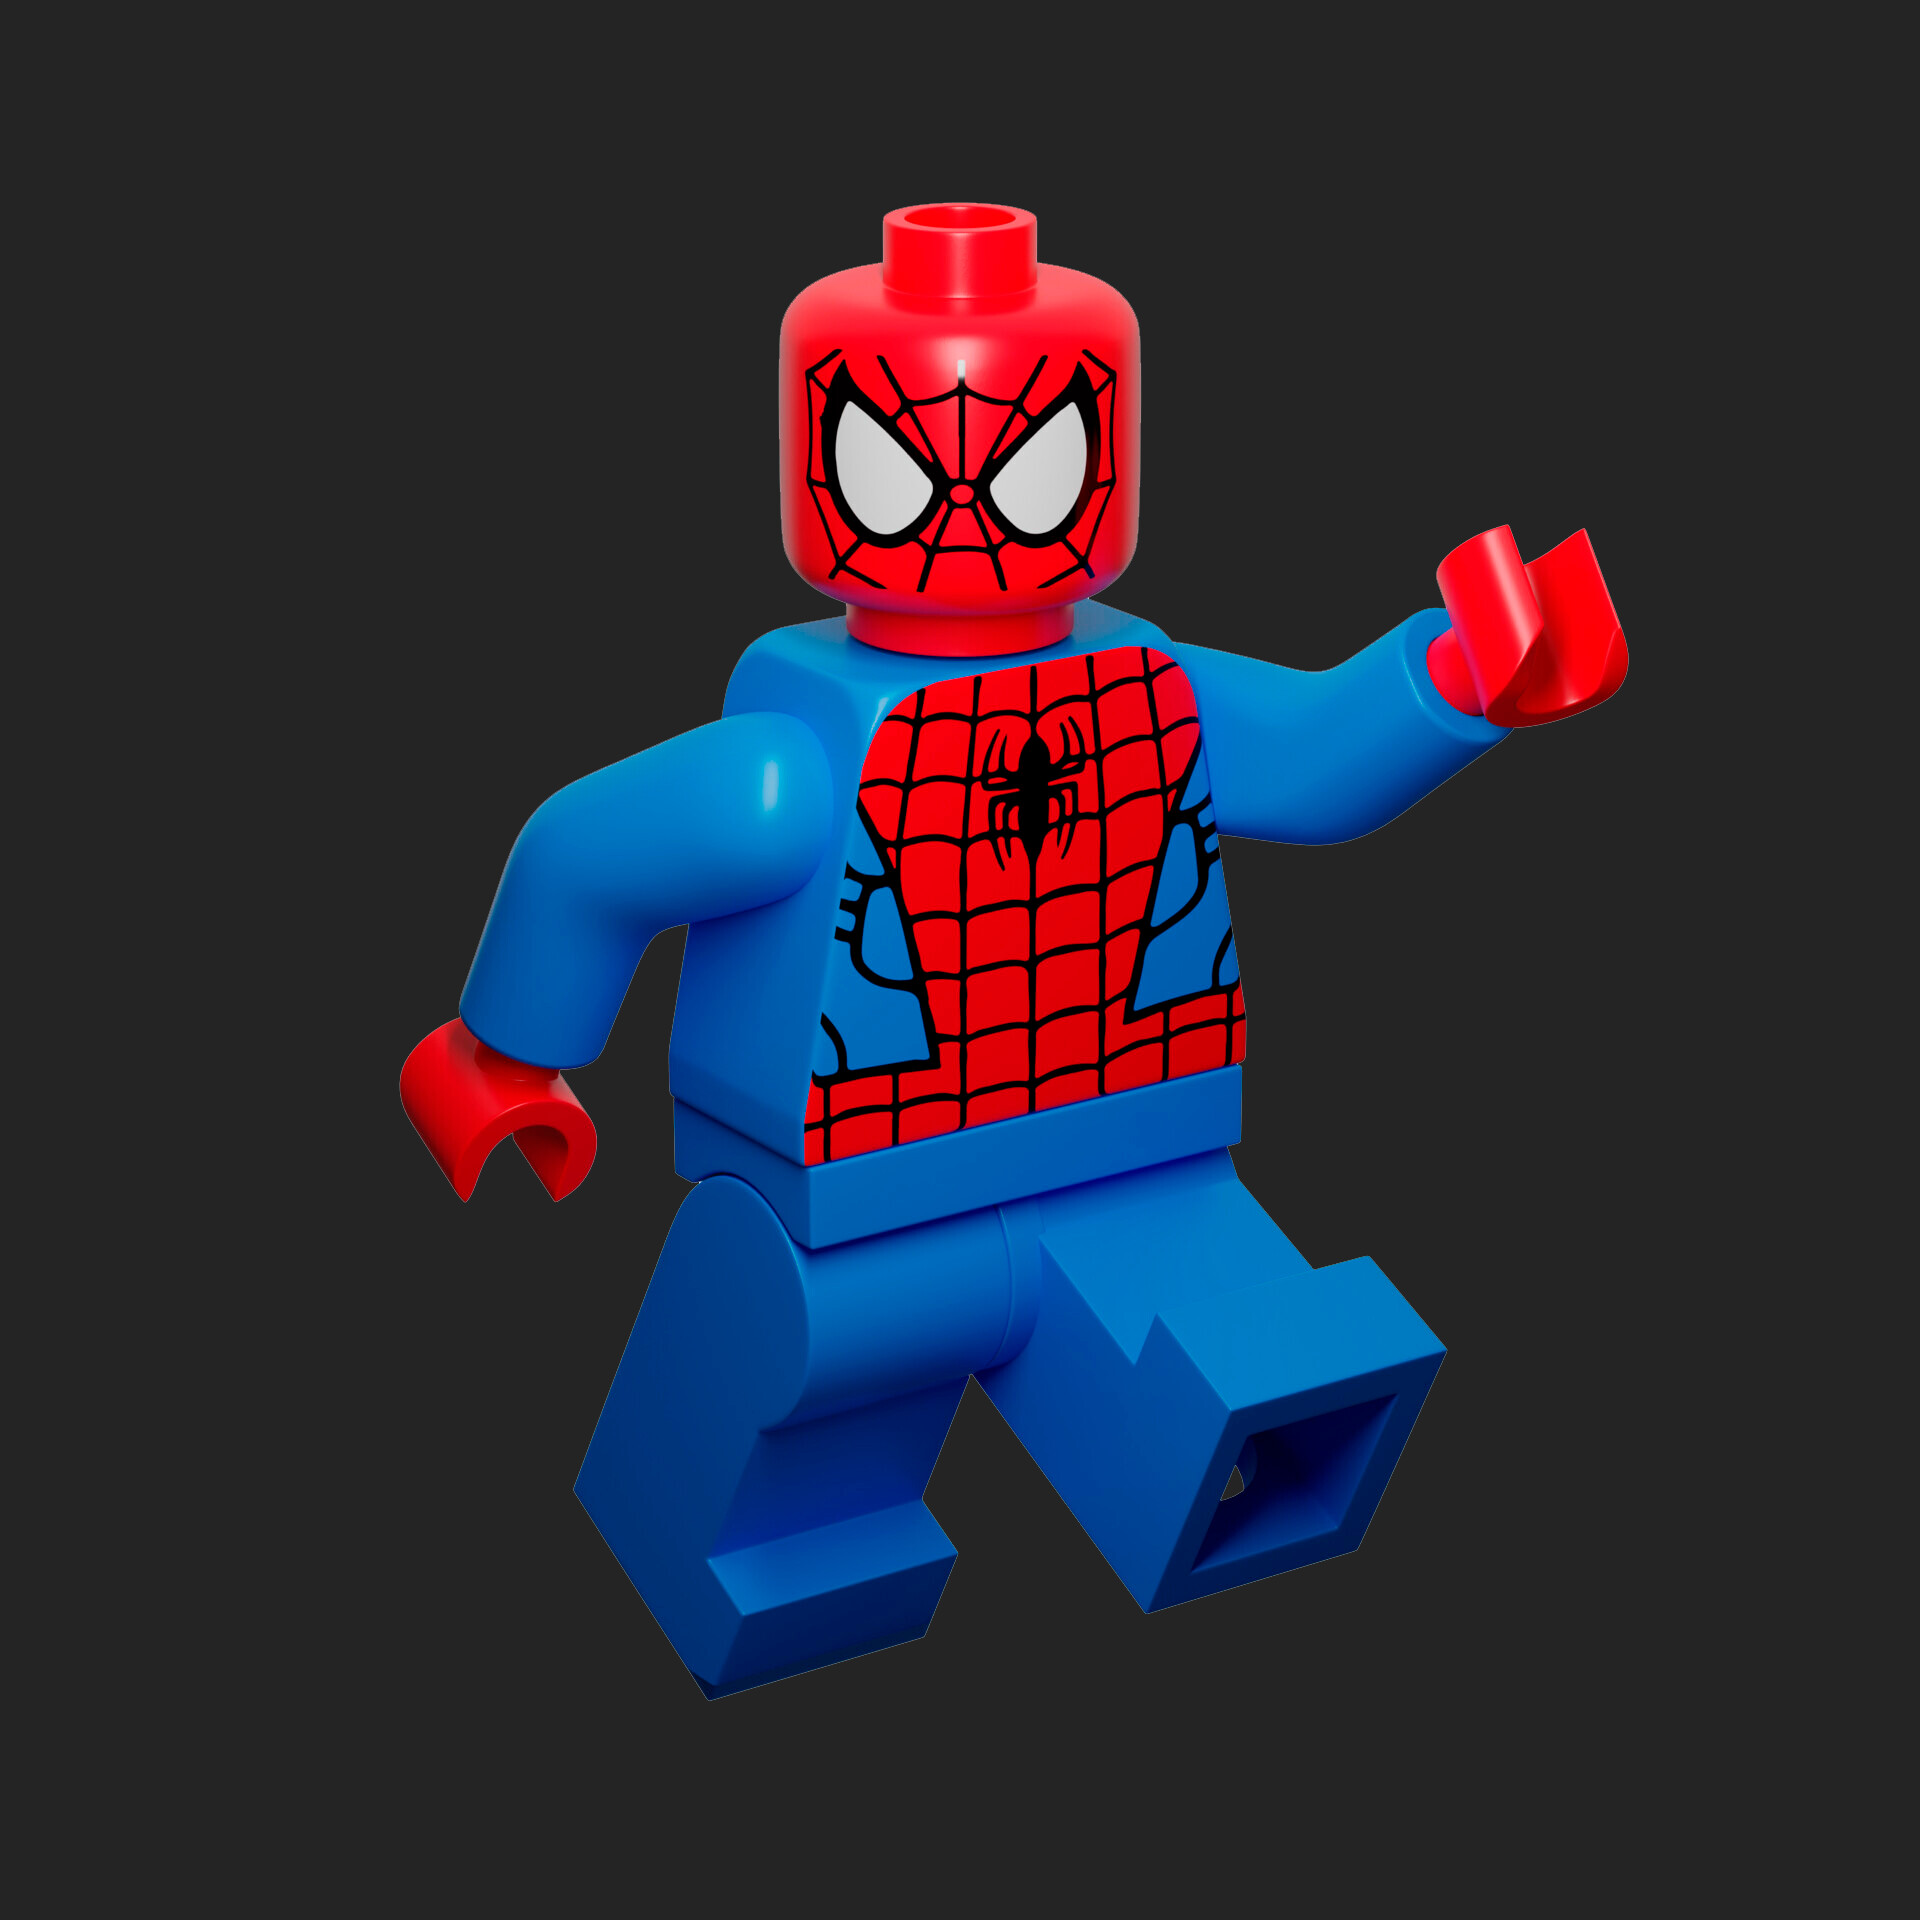 ArtStation - Lego spider-man